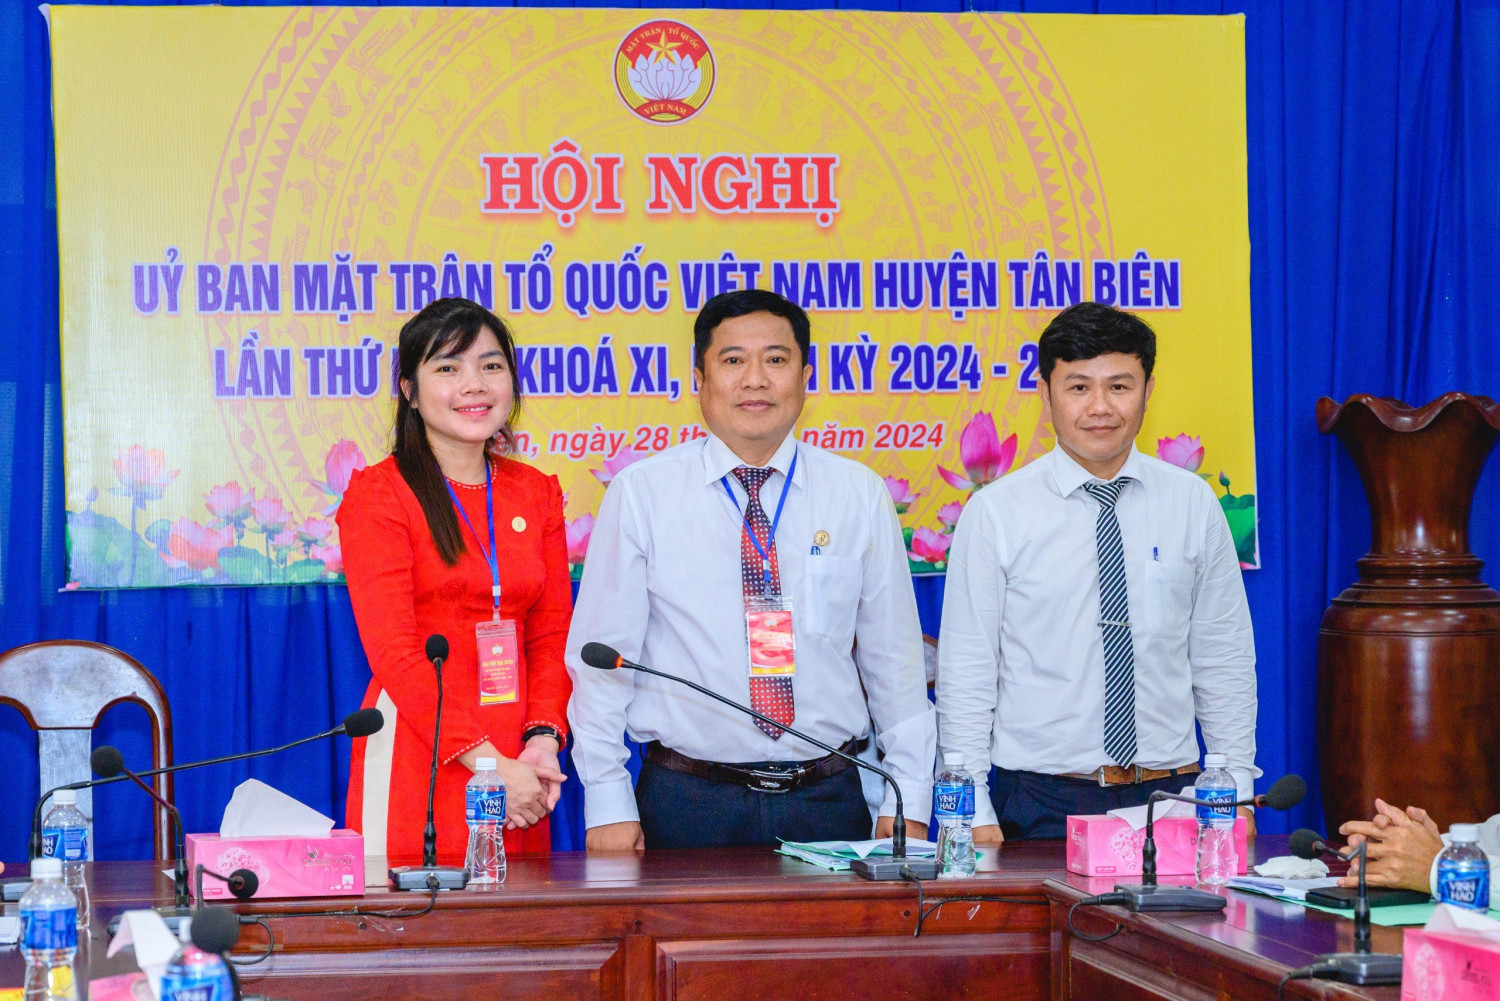 Đại hội Mặt trận Tổ quốc Việt Nam huyện Tân Biên, nhiệm kỳ 2024 – 2029 